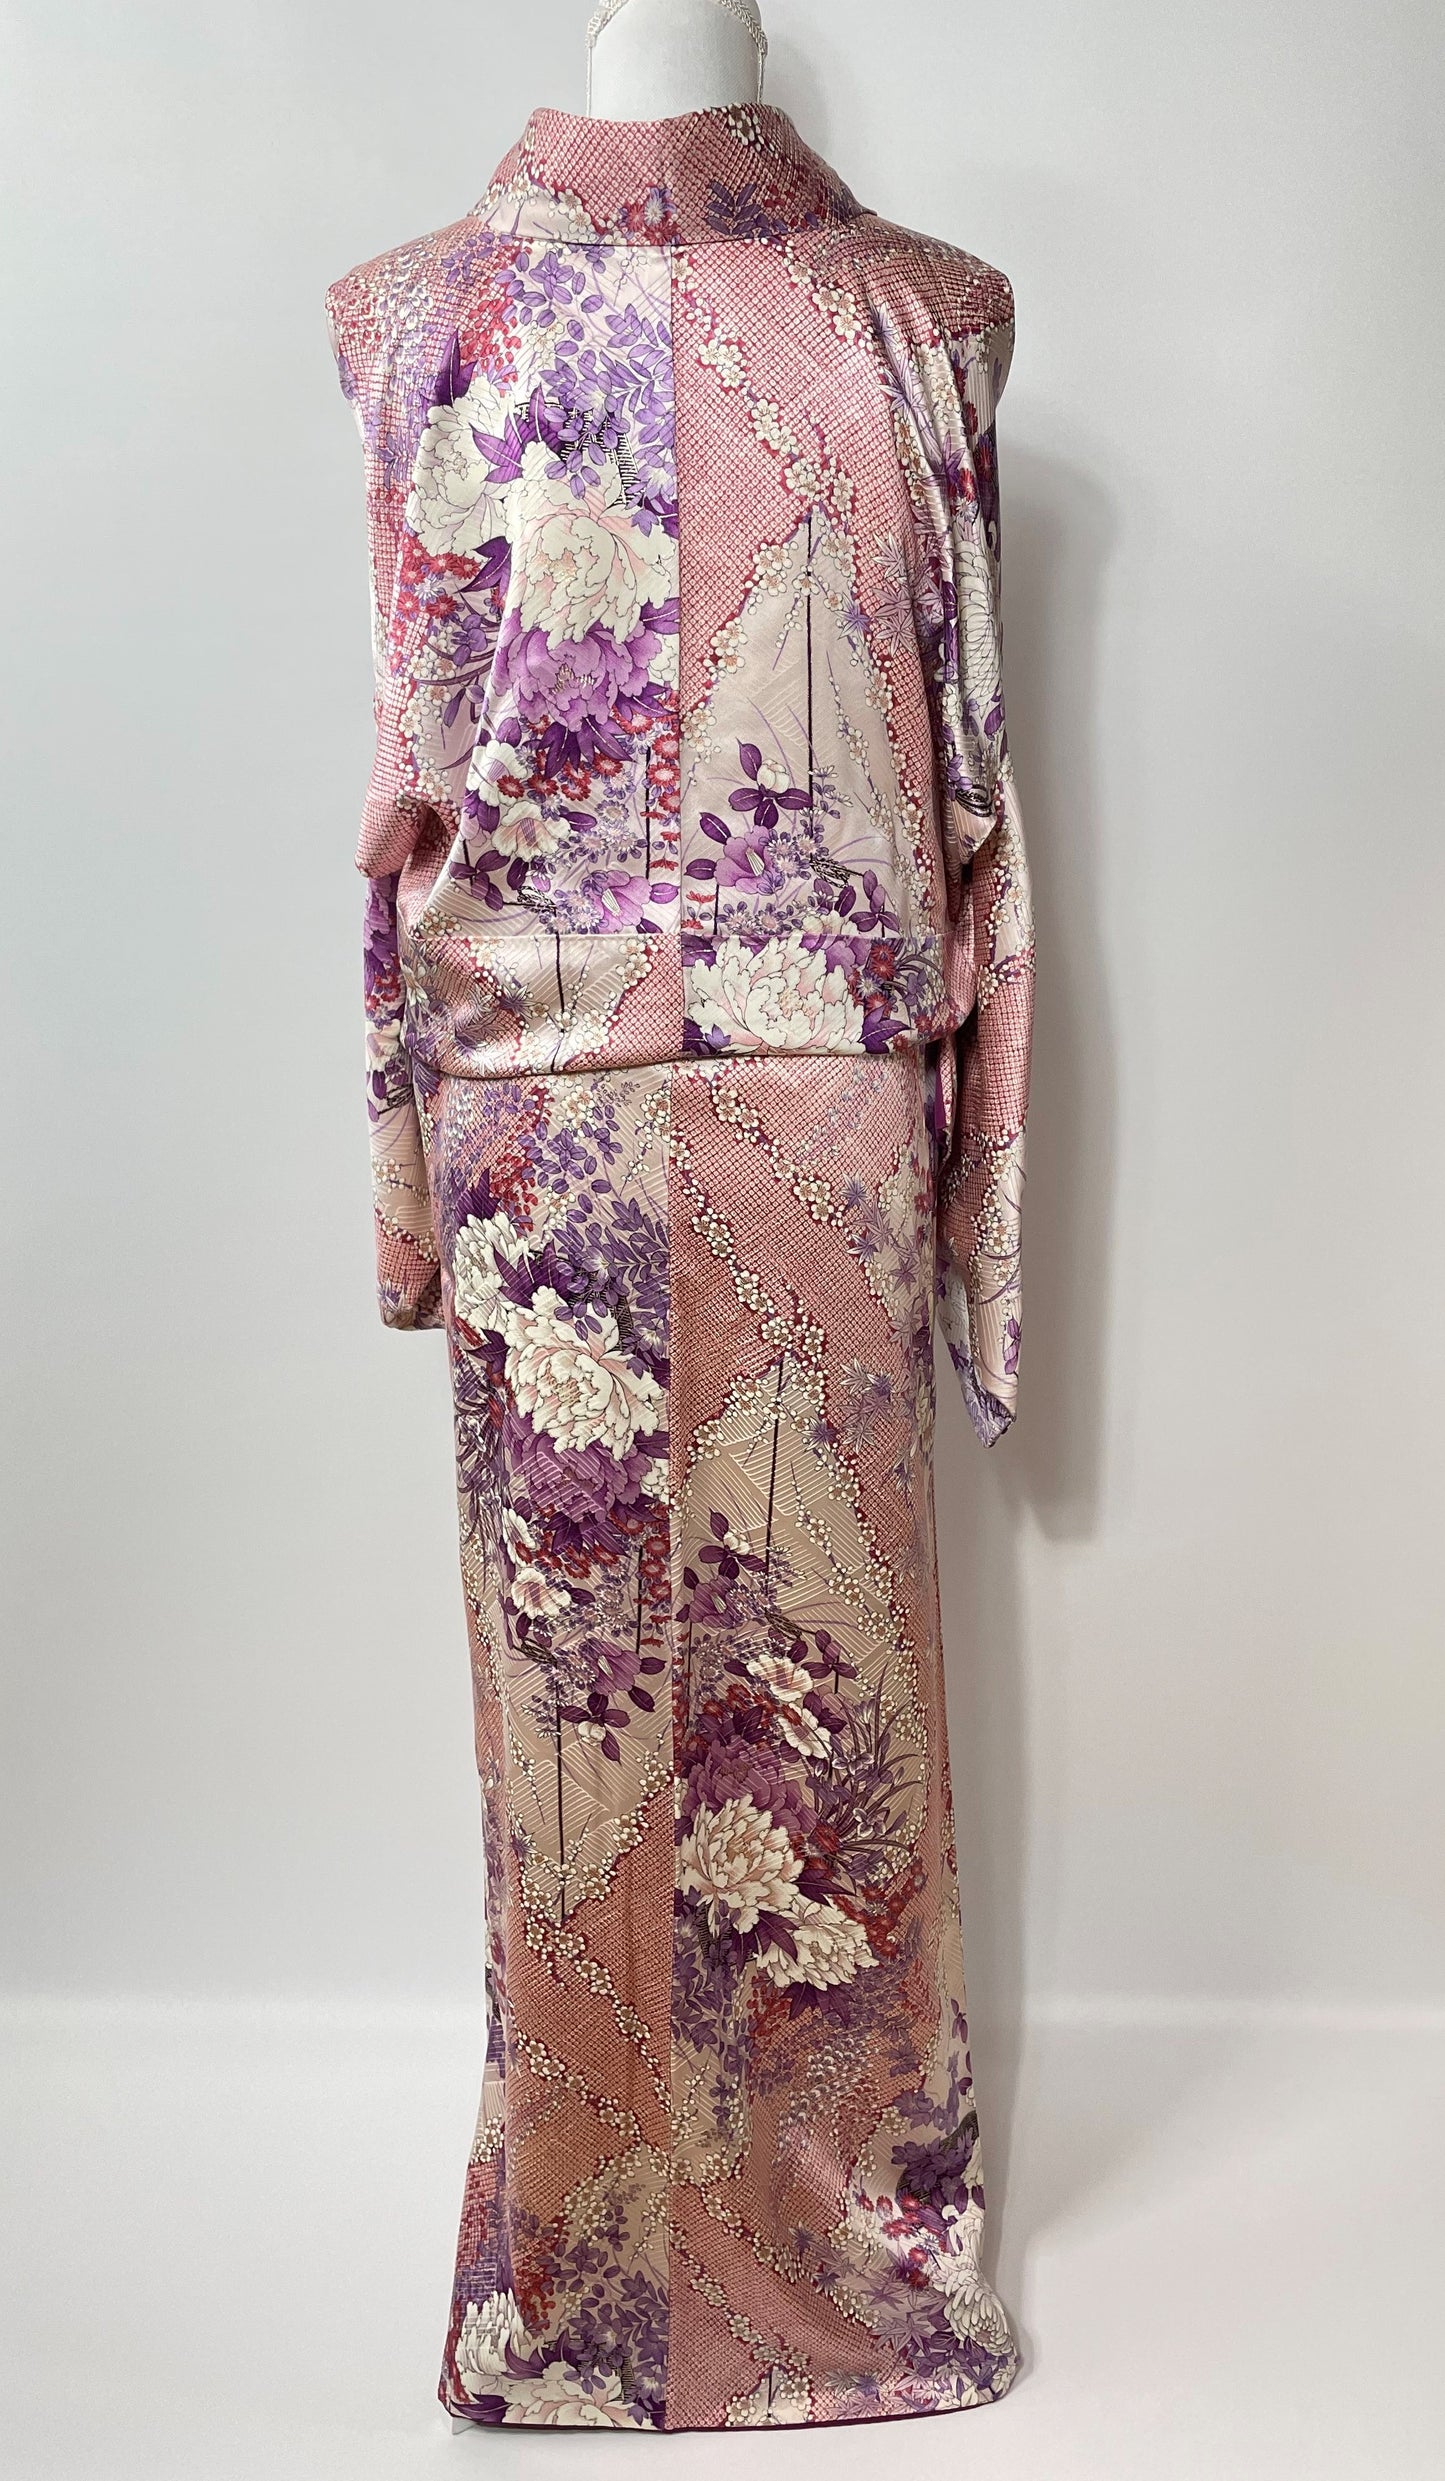 Original Silk Kimono (1900's - used)